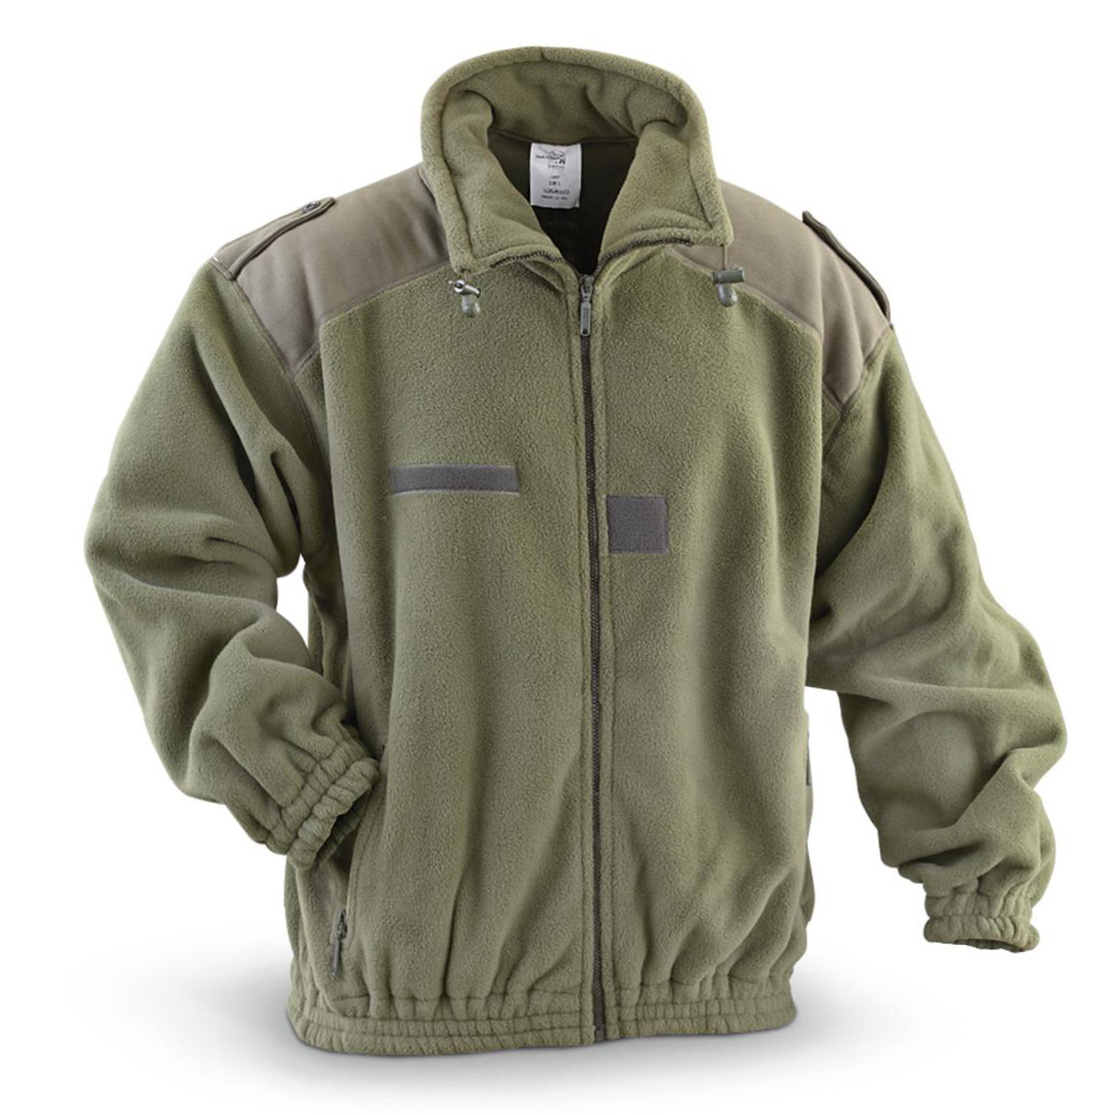 Mens Outdoor Warm Fleece Tactical Jacket